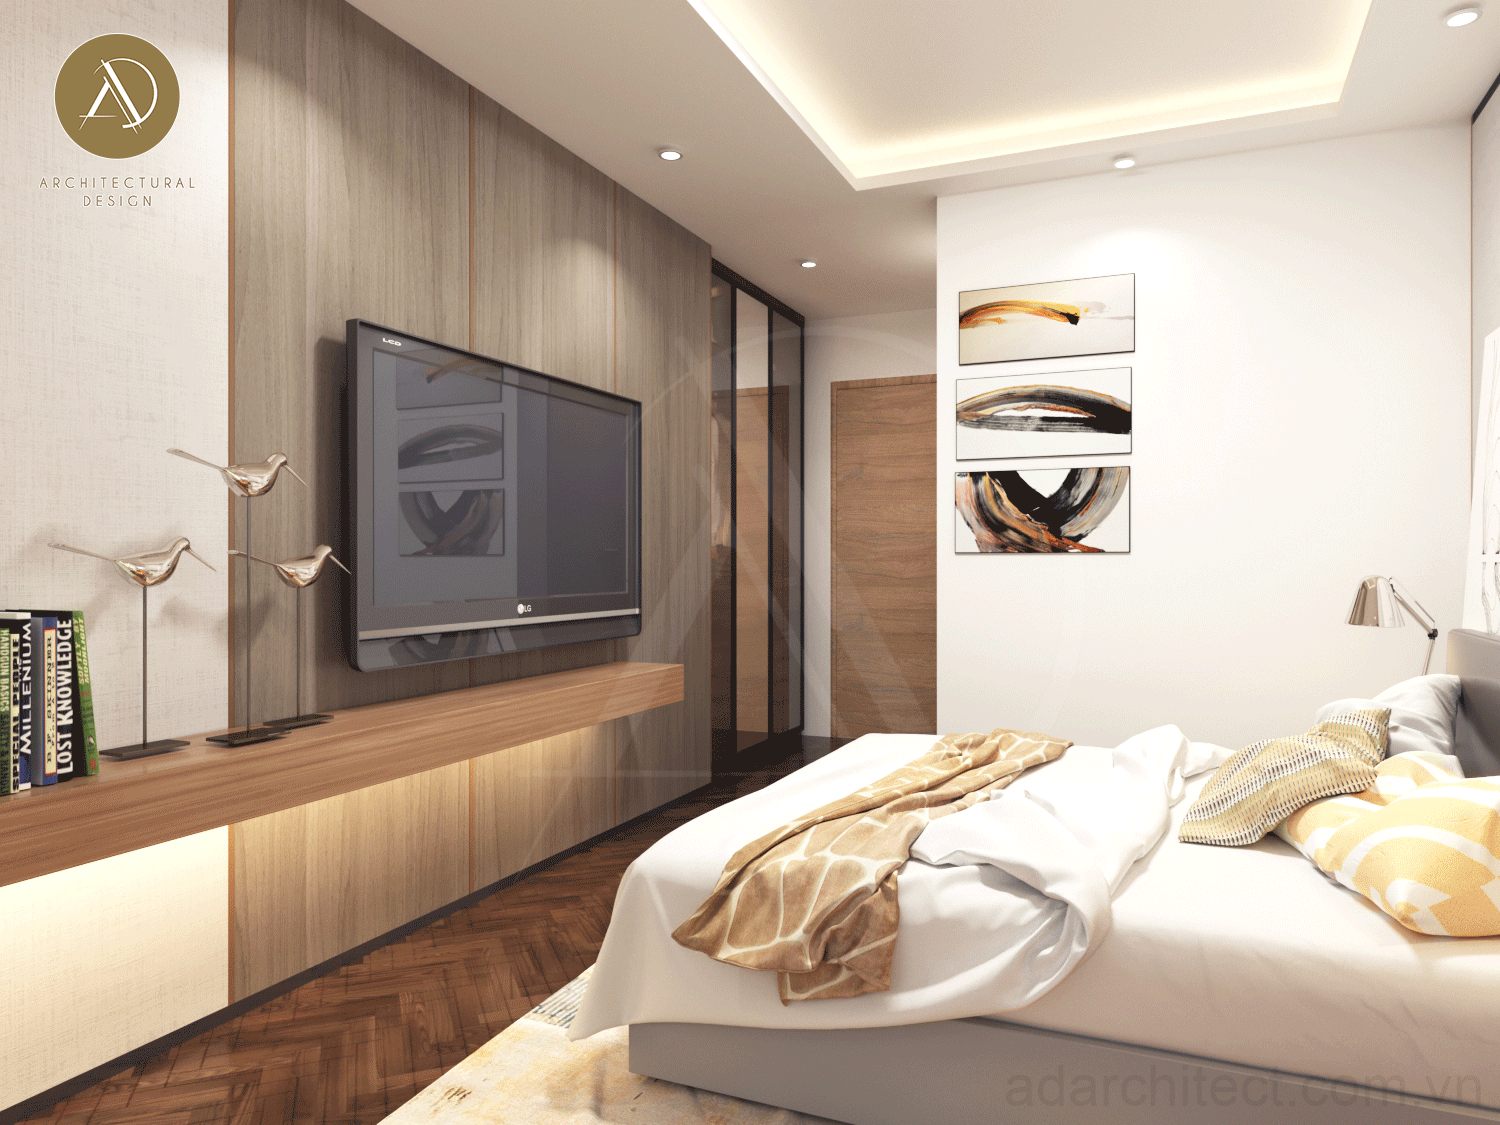 thiết kế đèn âm trần nhỏ gọn đủ ánh sáng cho phòng ngủ Penthouse ấm áp